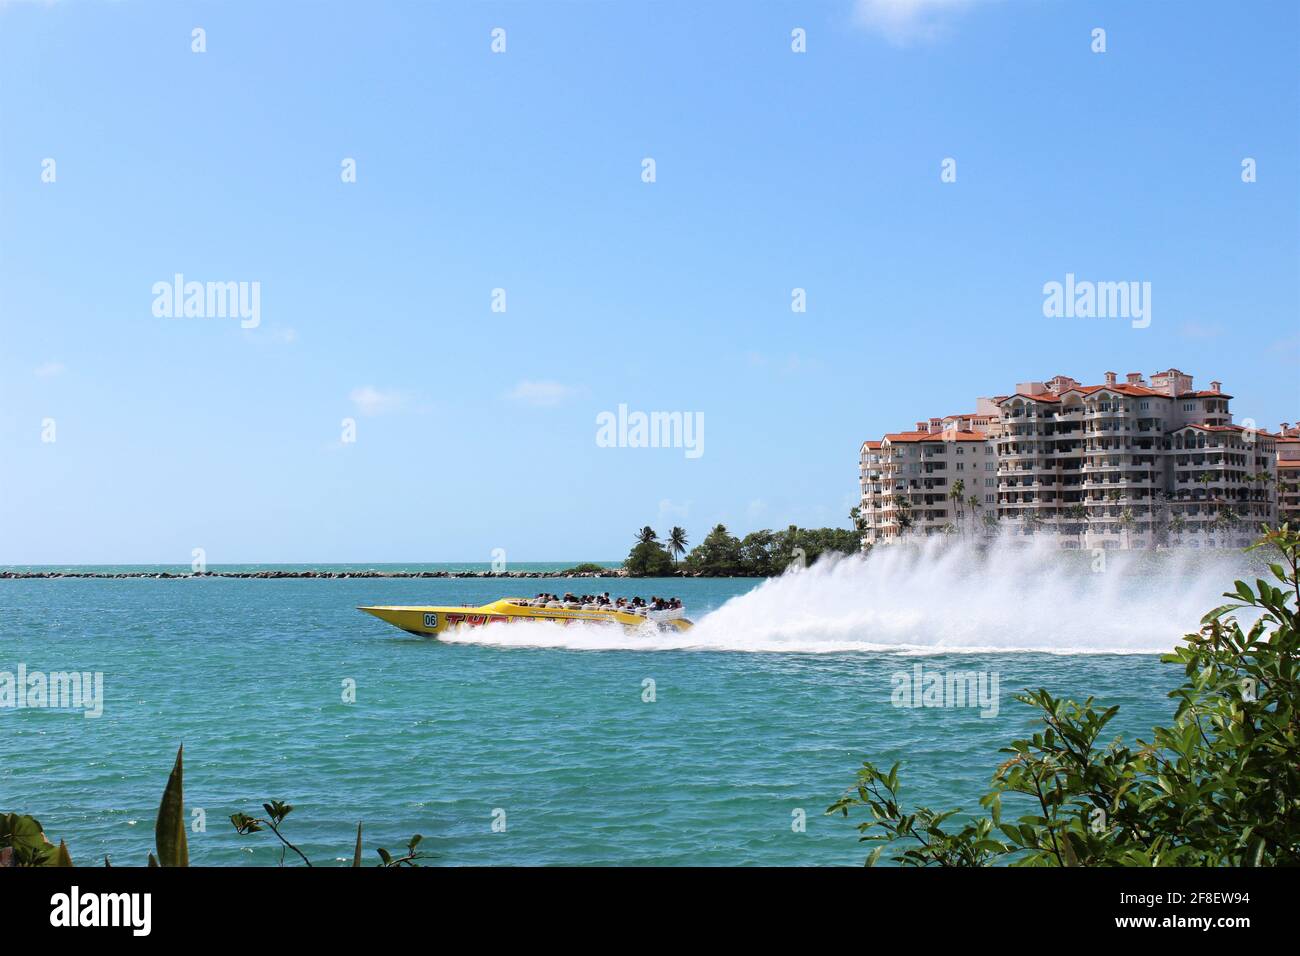 Le thriller Miami Speedboat Adventures offre des visites touristiques amusantes et des attractions. Visites publiques quotidiennes et chartes privées. Mise au point sélective. Banque D'Images